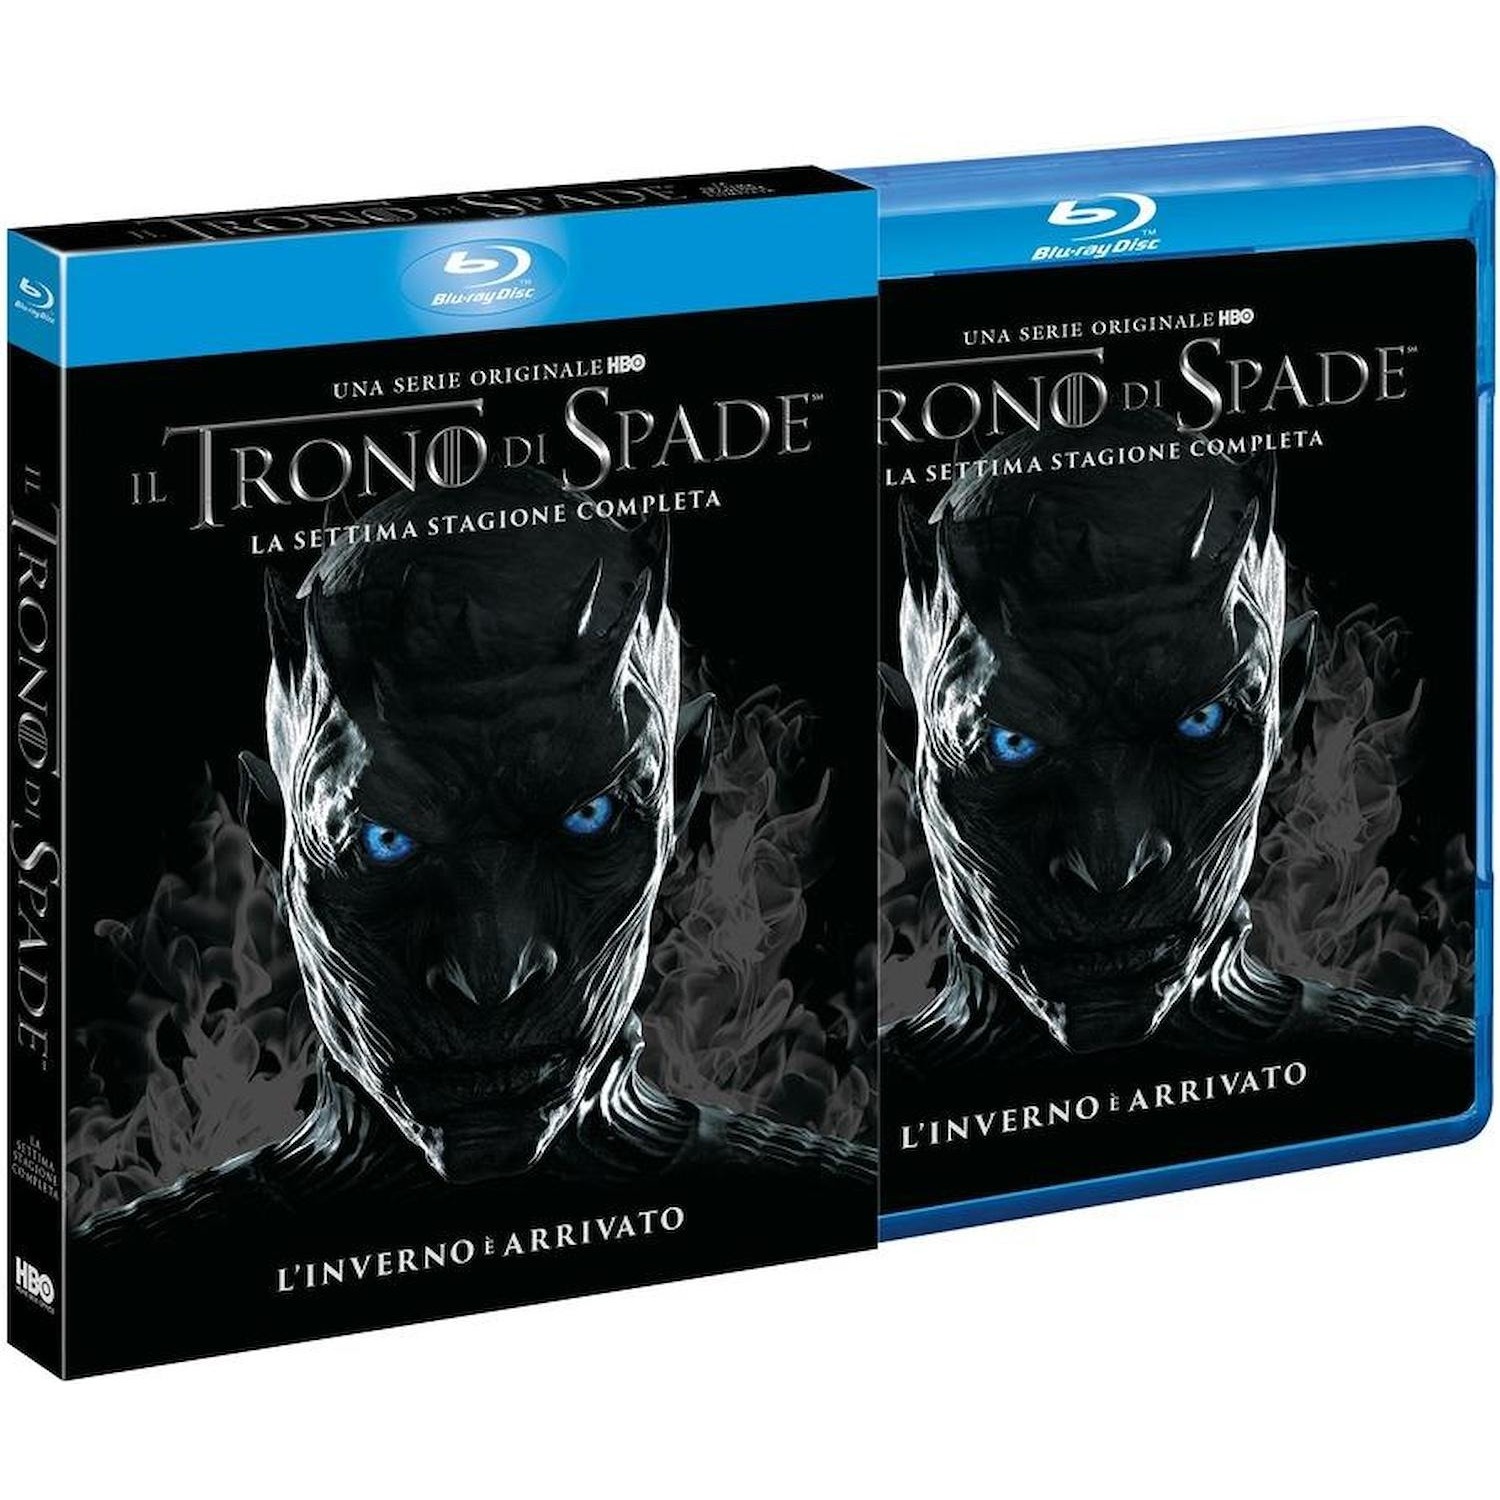 Immagine per Serie TV Blu-ray Il Trono di Spade Stagione 7  standard pack da DIMOStore